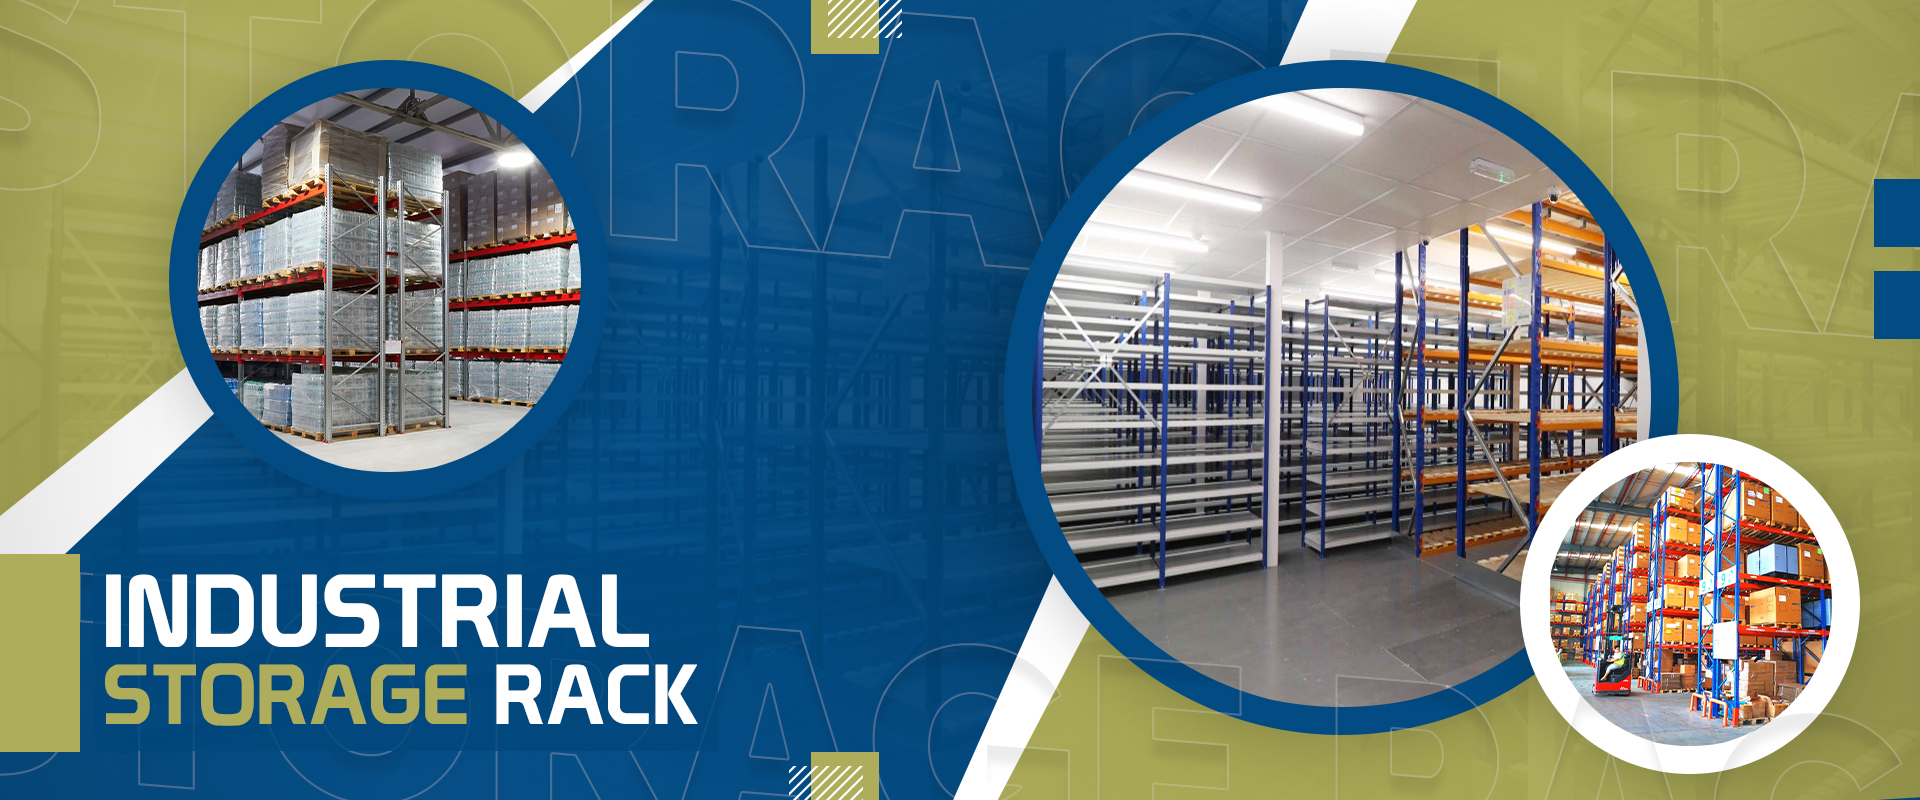 Industrial Storage Rack